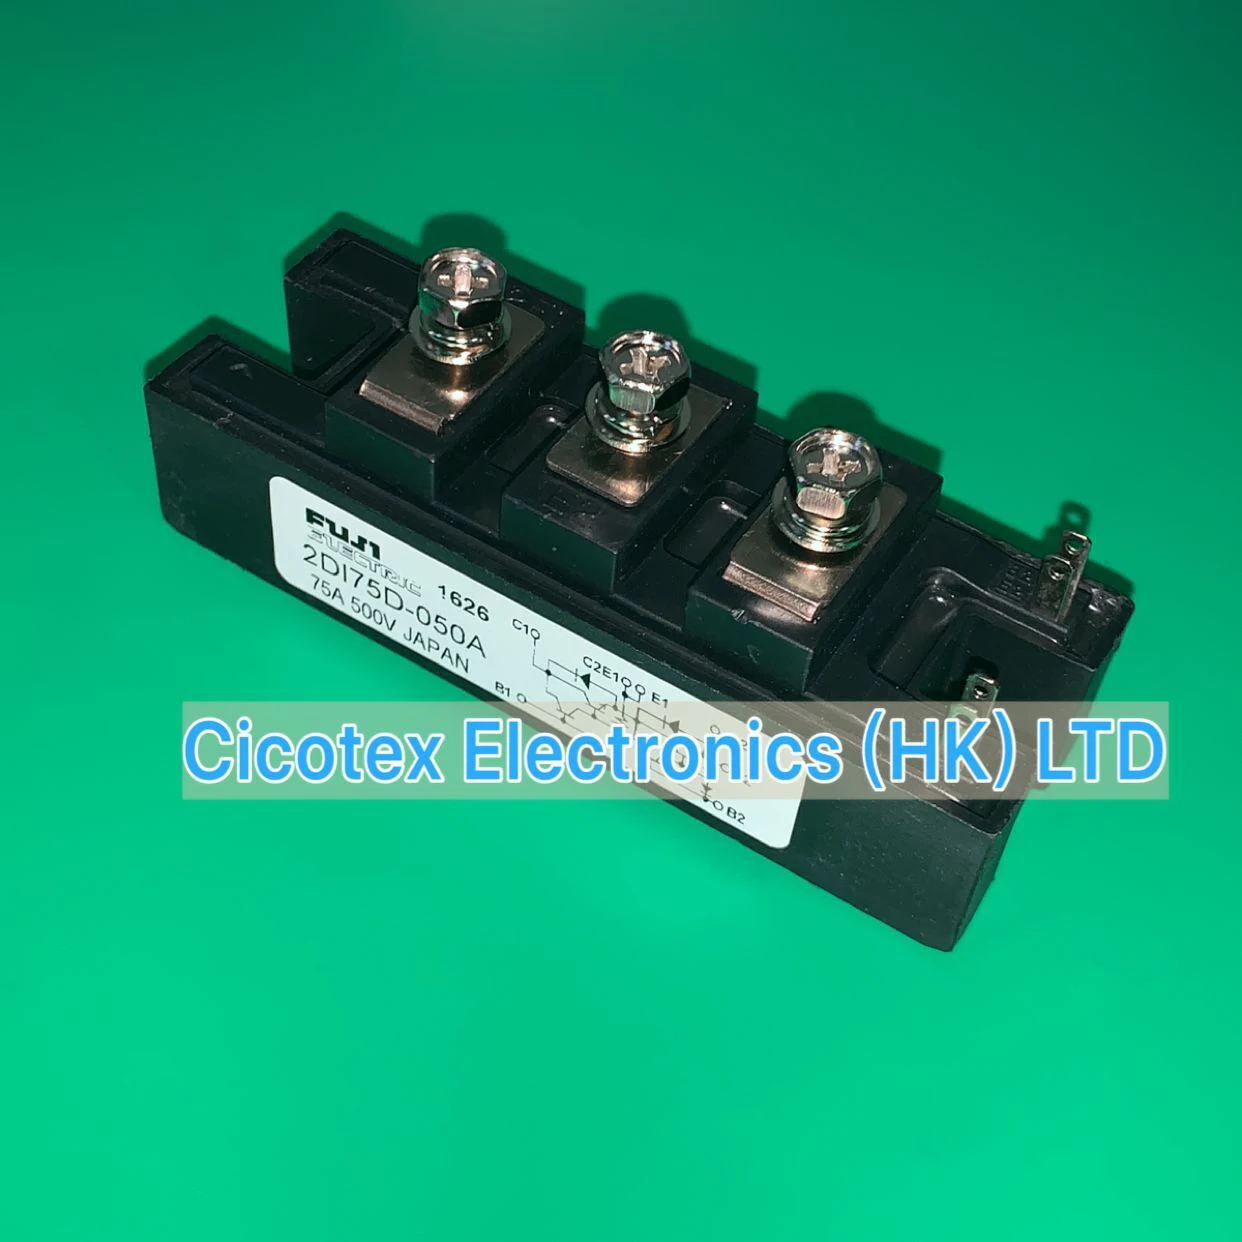 2DI75D-050A IGBT 2DI75 D-050A 75A 500V 2DI 75D-050A модуль транзистора высокой мощности 2D175D-050A 2DI75D050A |